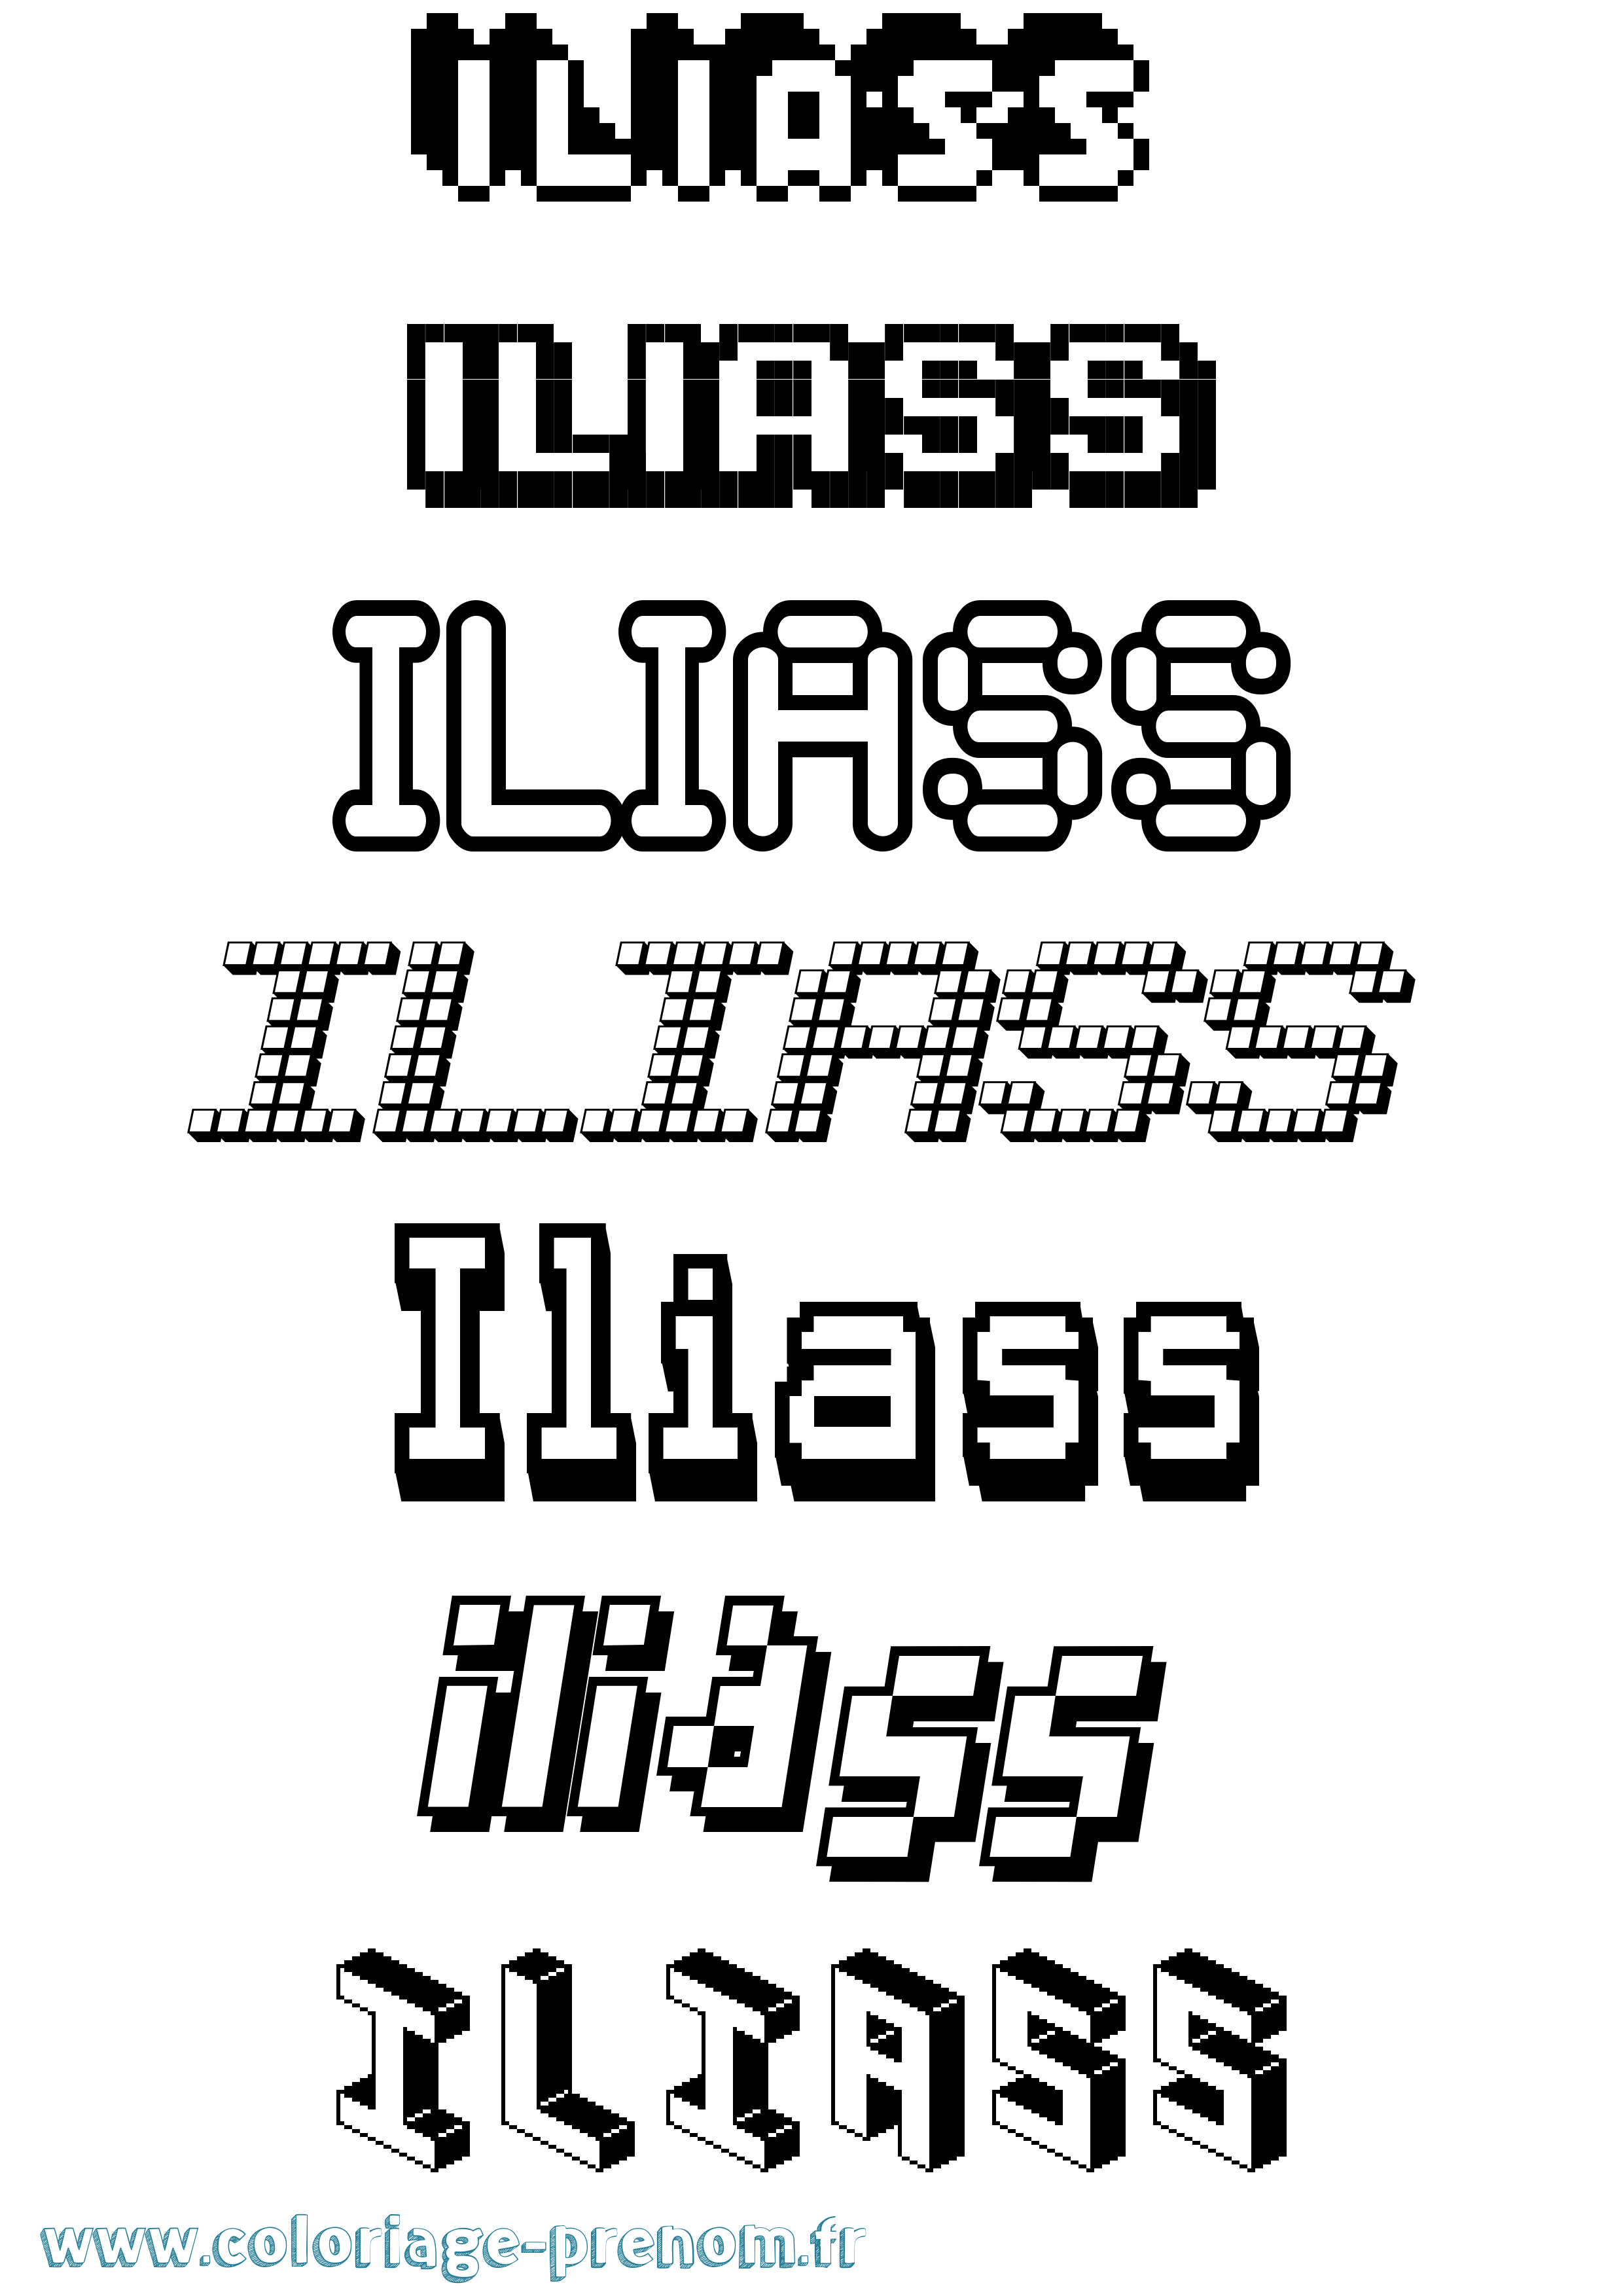 Coloriage prénom Iliass Pixel